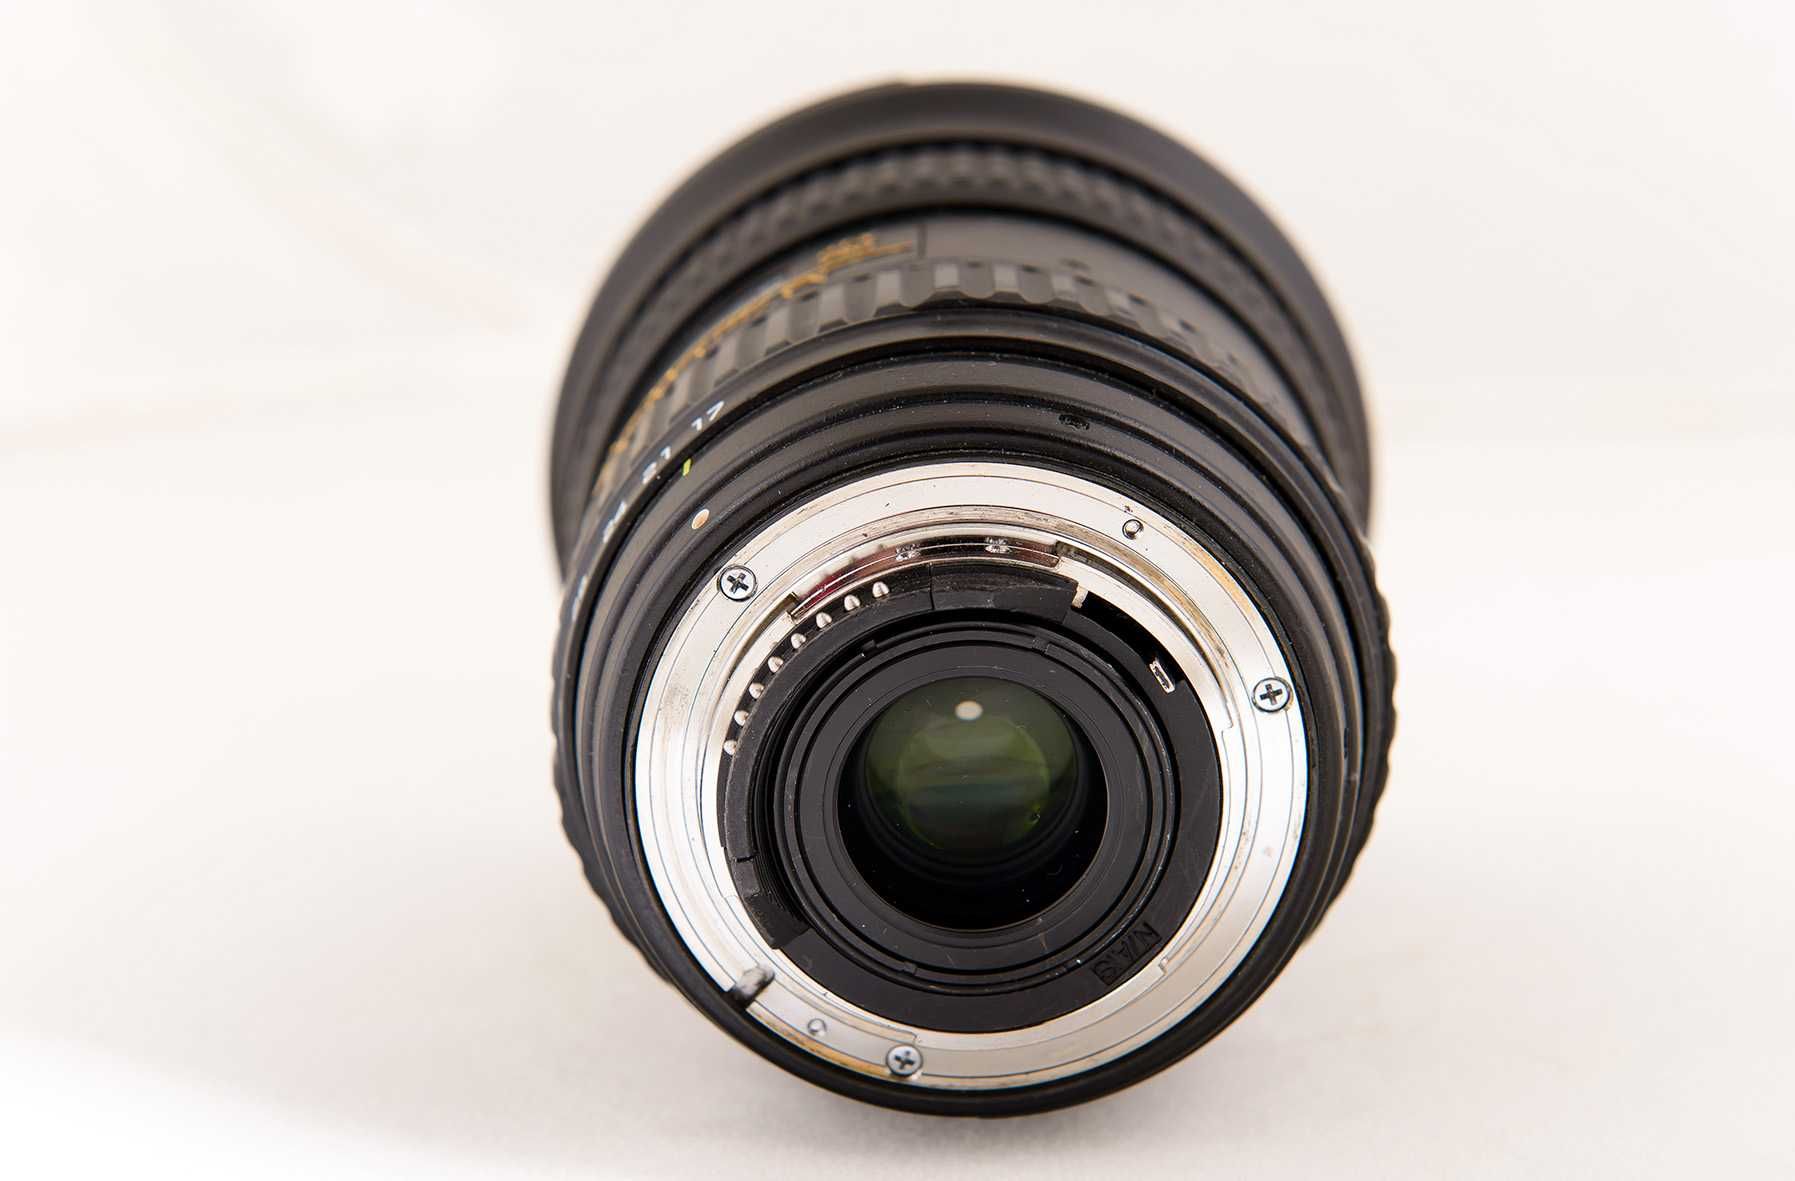 Tokina sd 17-35 f4 fx atx-pro for Nikon